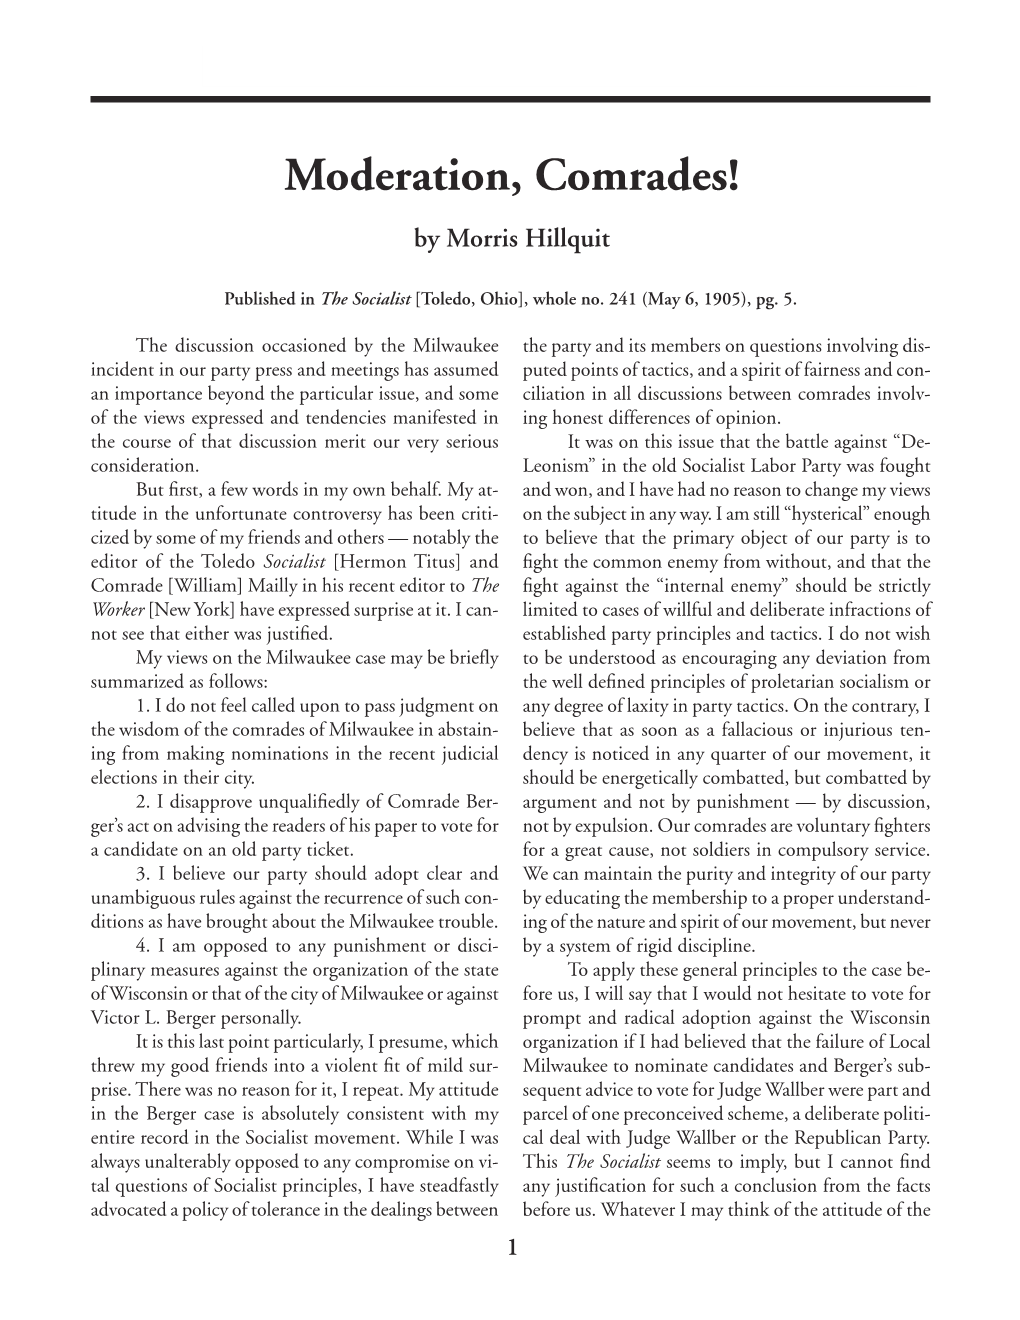 Moderation, Comrades! [May 6, 1905] 1